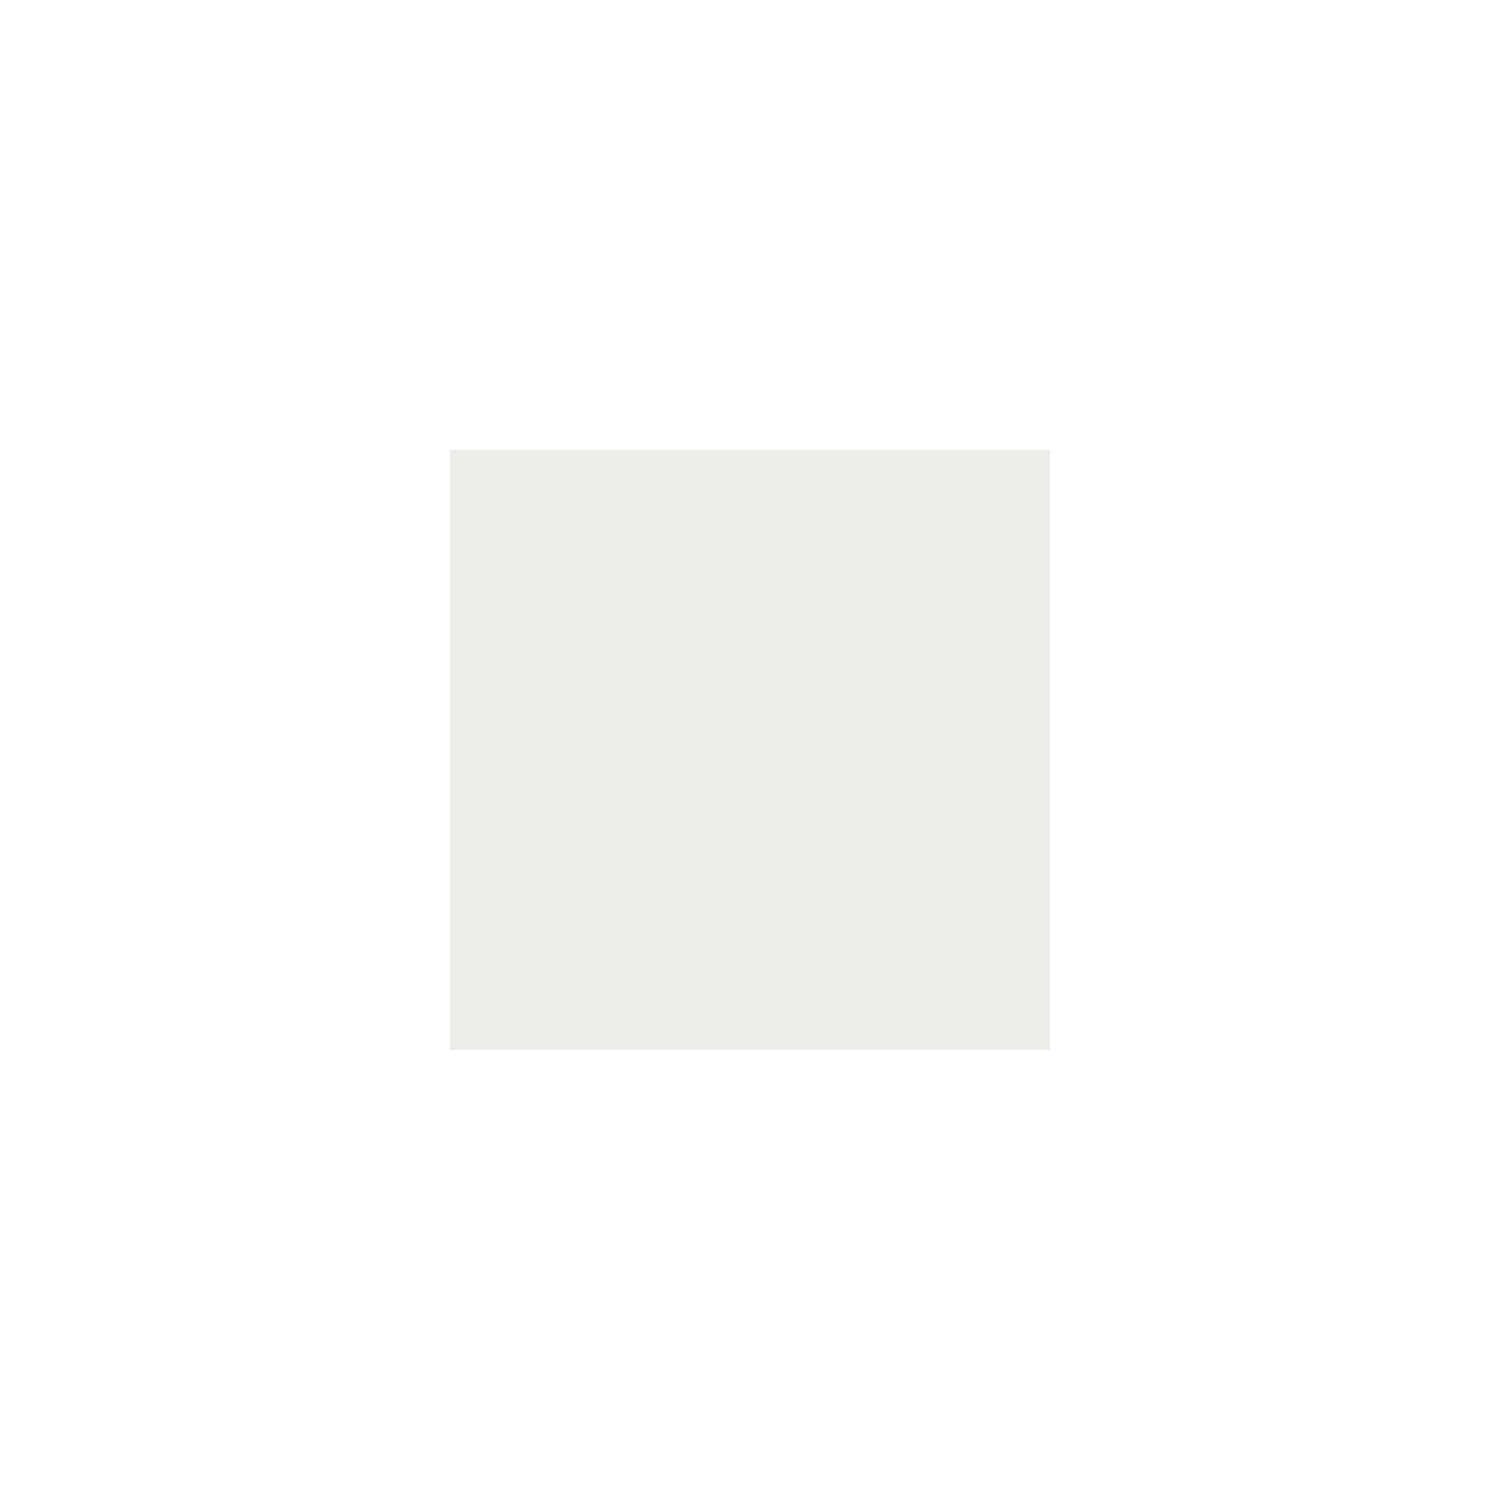 Itamoby Consolle allungabile 90x40/196 cm Diago Small Quercia Natura telaio Bianco